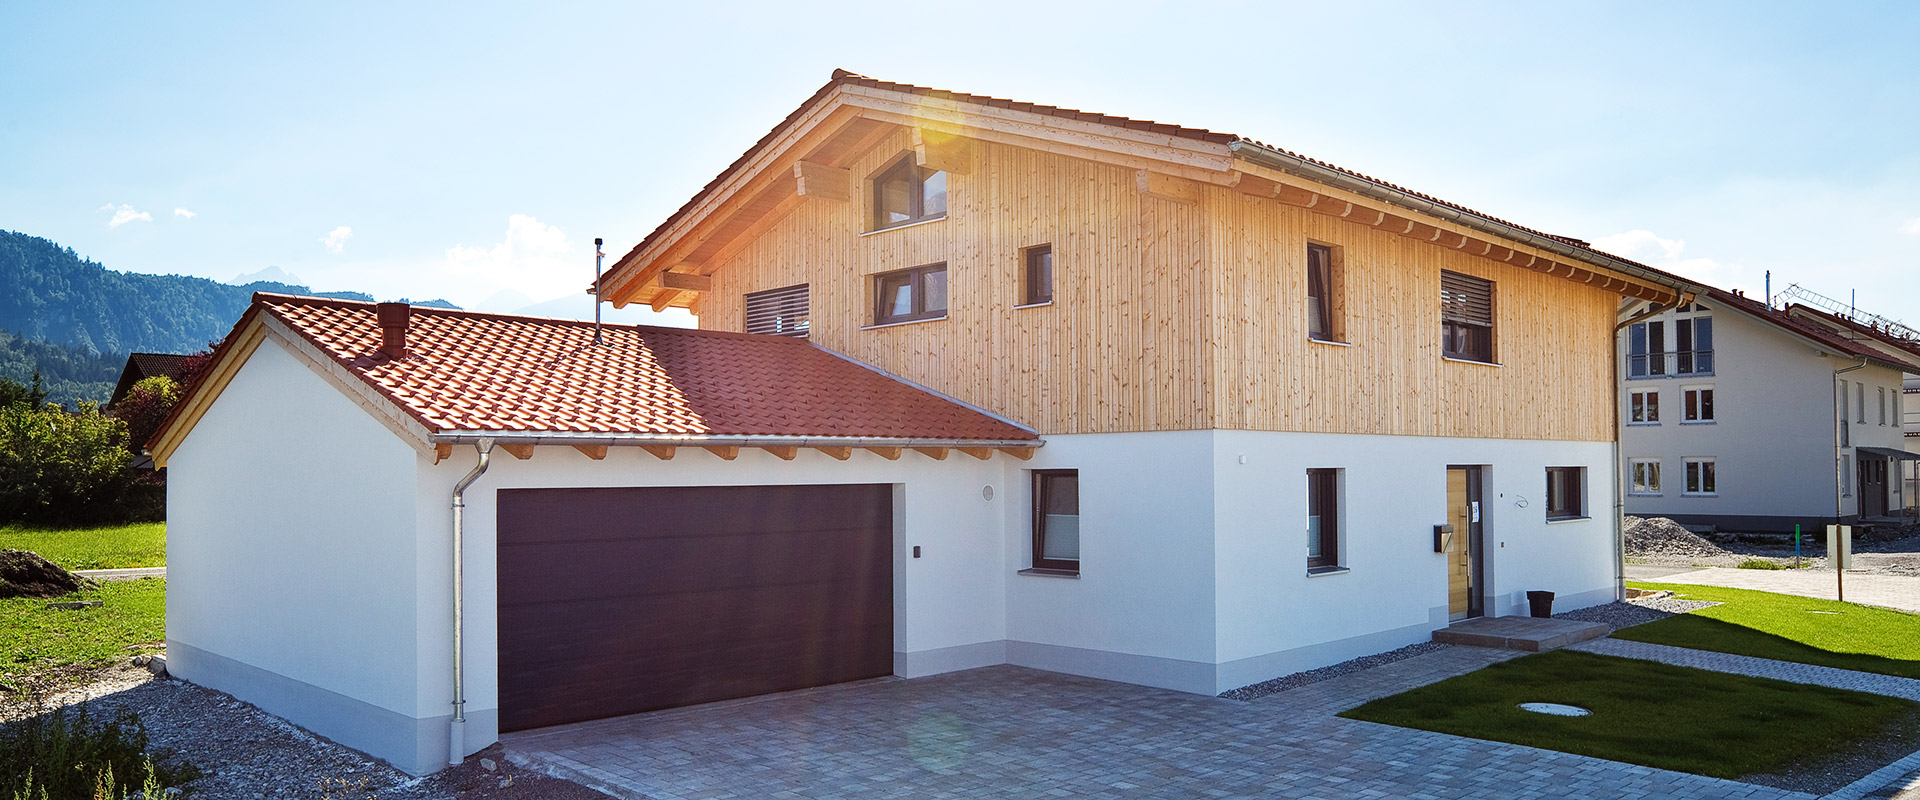 Schlüsselfertiges Einfamilienhaus in Holzbauweise und KfW 40 Effizienzhaus